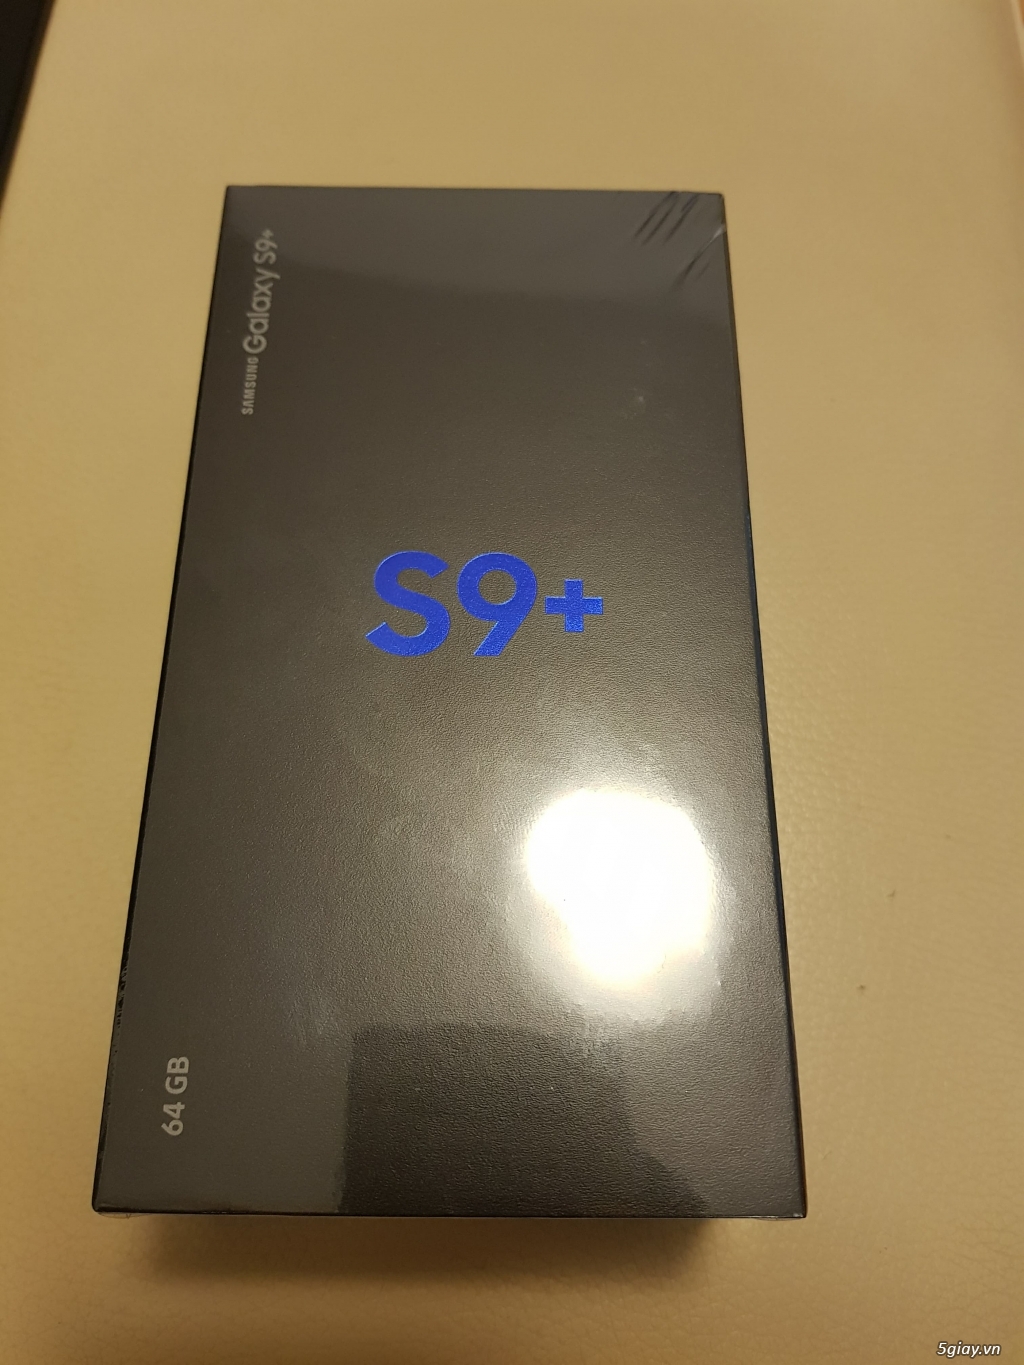 SAMSUNG GALAXY S9 PLUS (BLACK, 64GB) CHÍNH HÃNG, MỚI 100% - 2